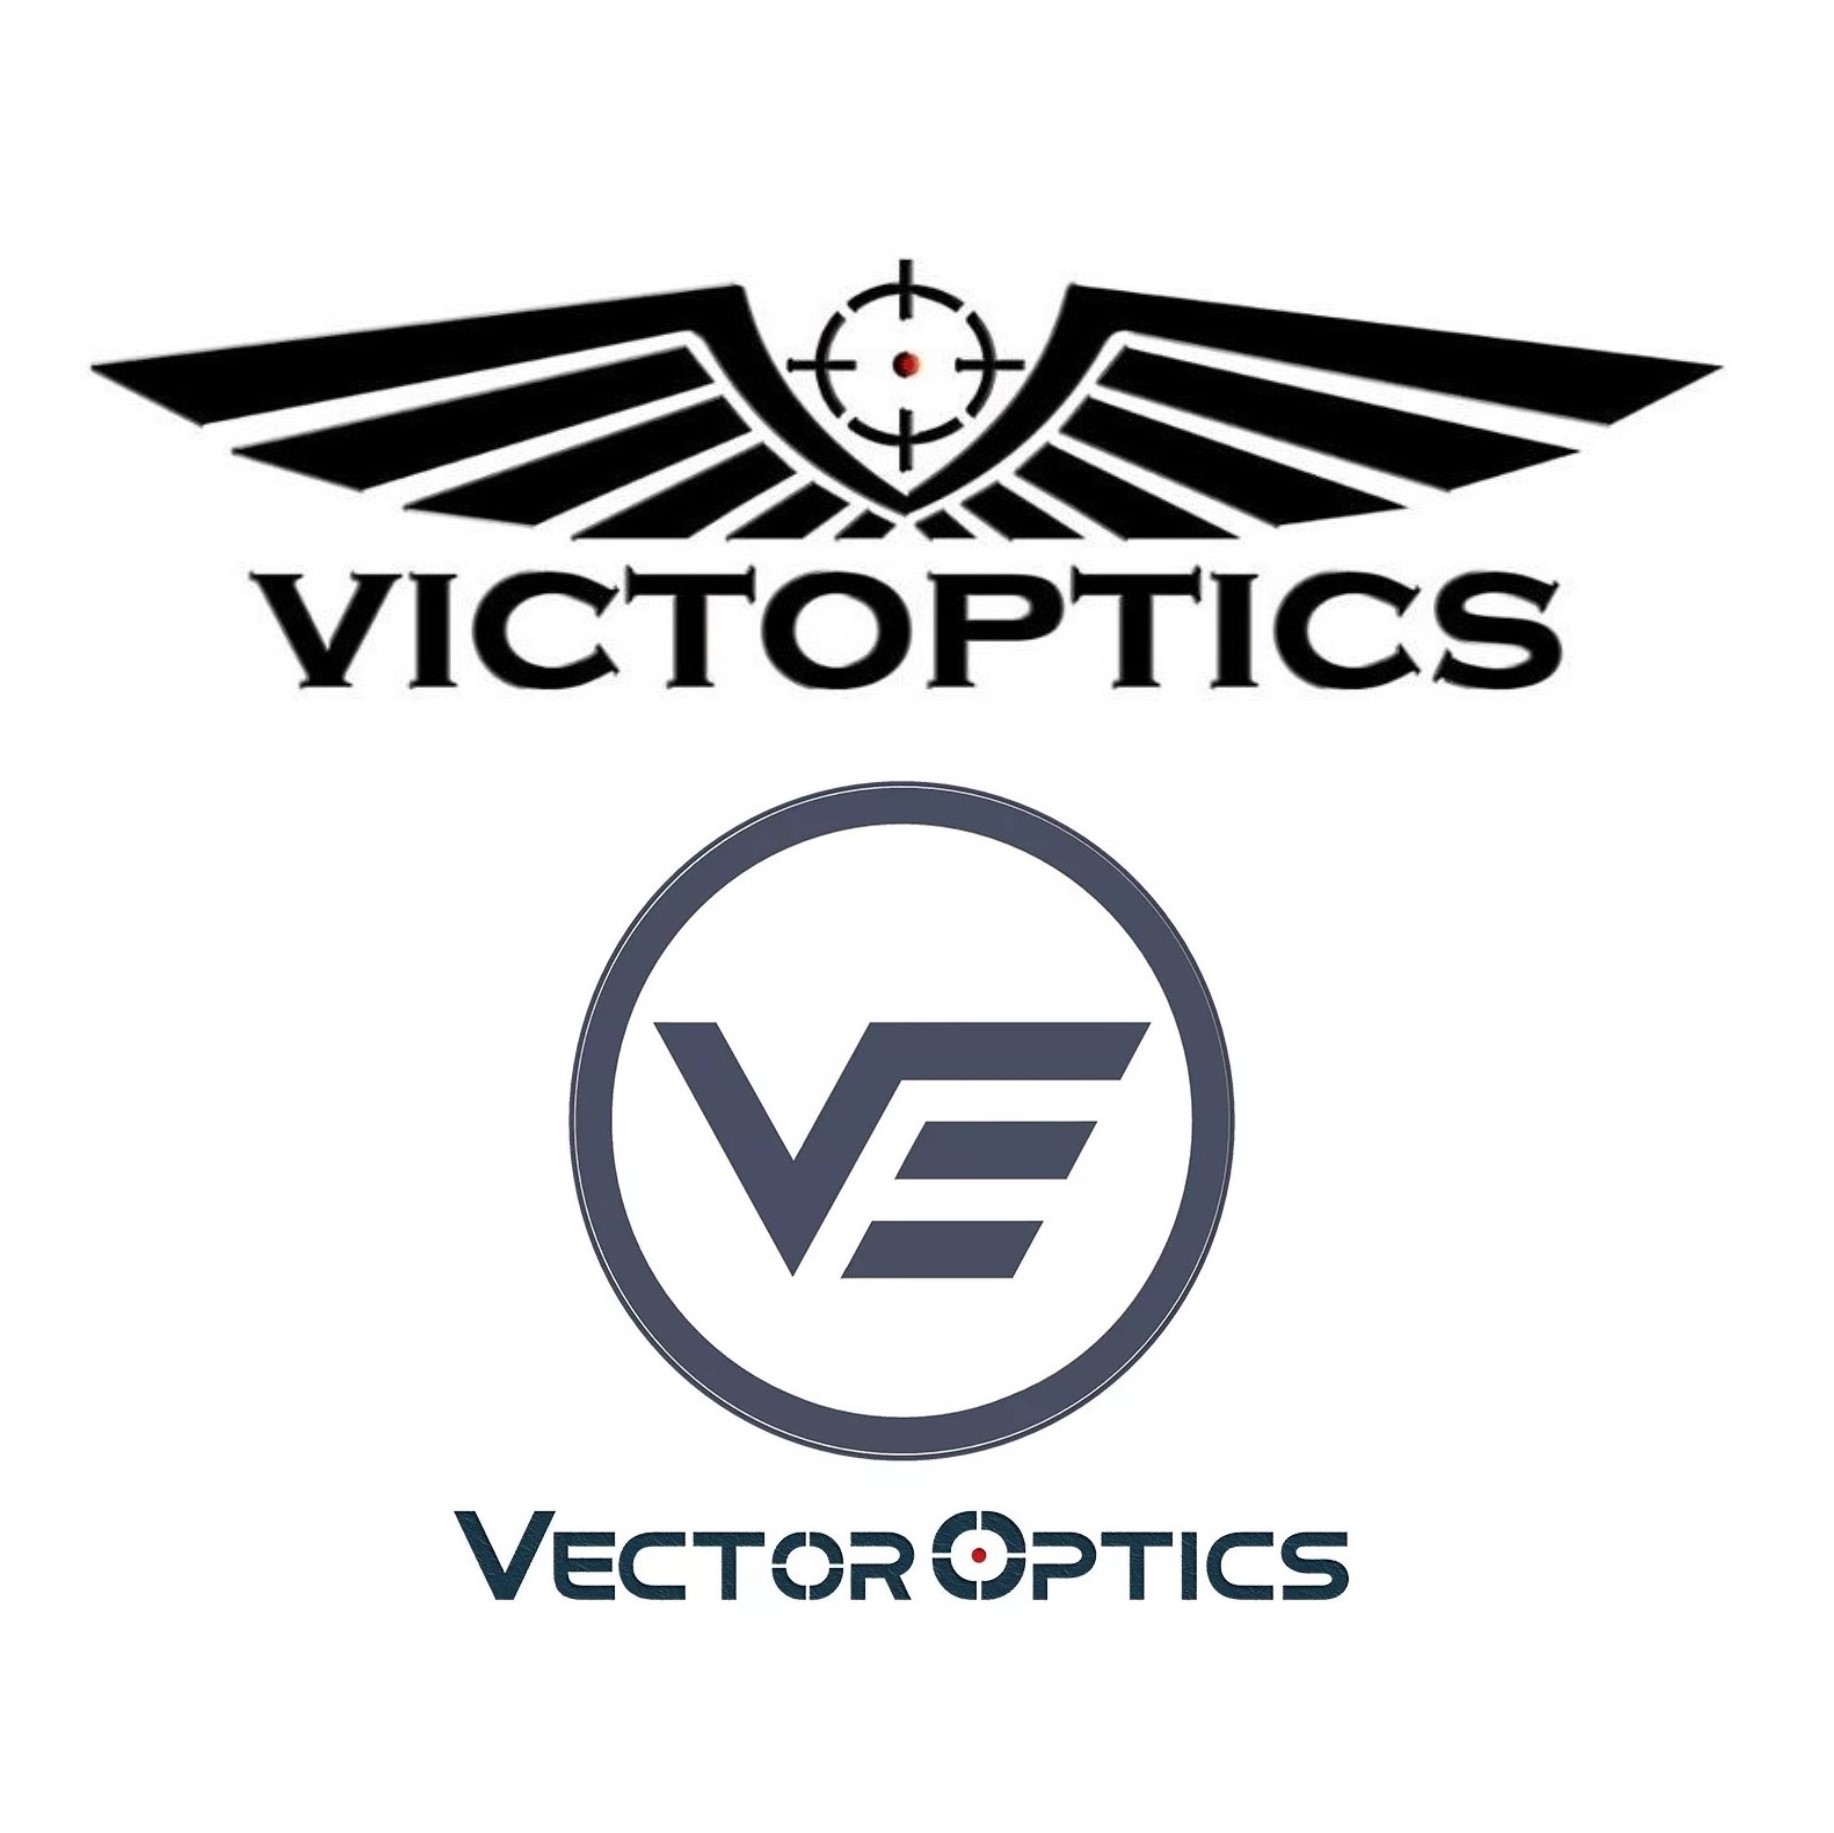 VICTOPTICS E VECTOR OPTICS